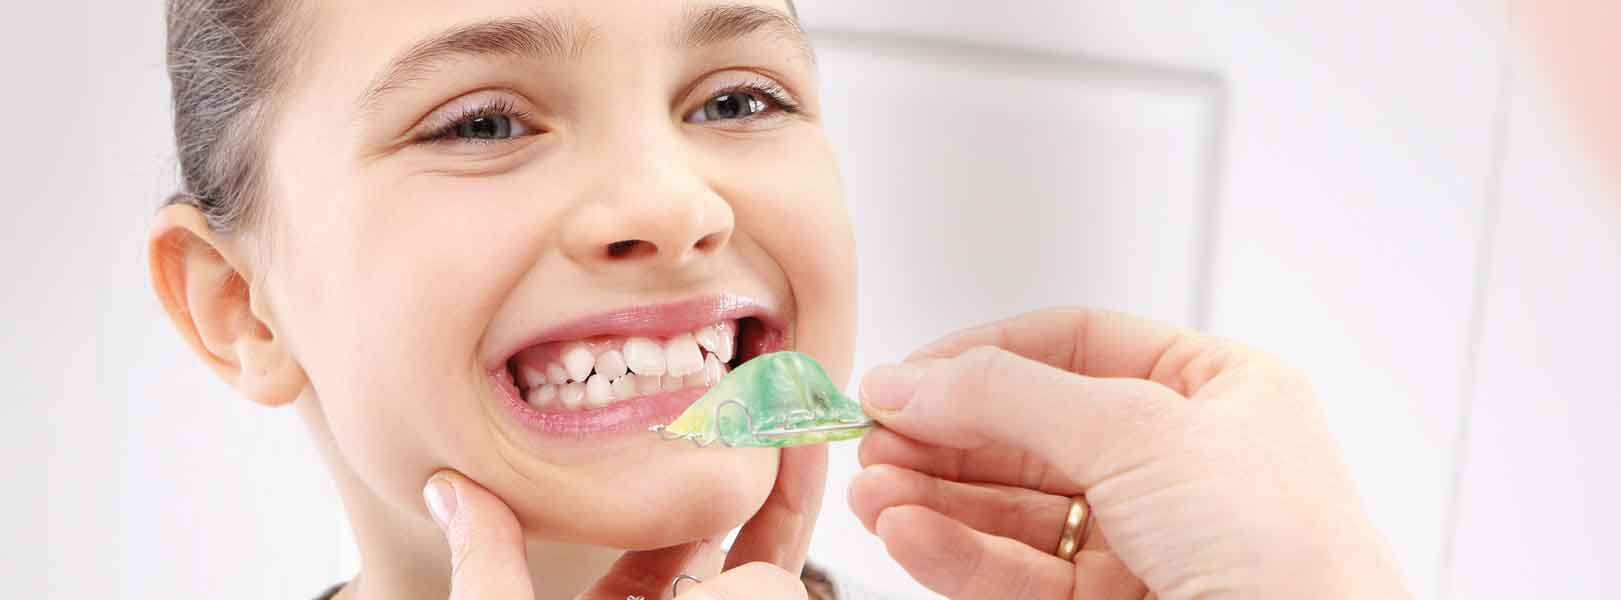 Dúvidas frequentes na consulta de Ortodontia